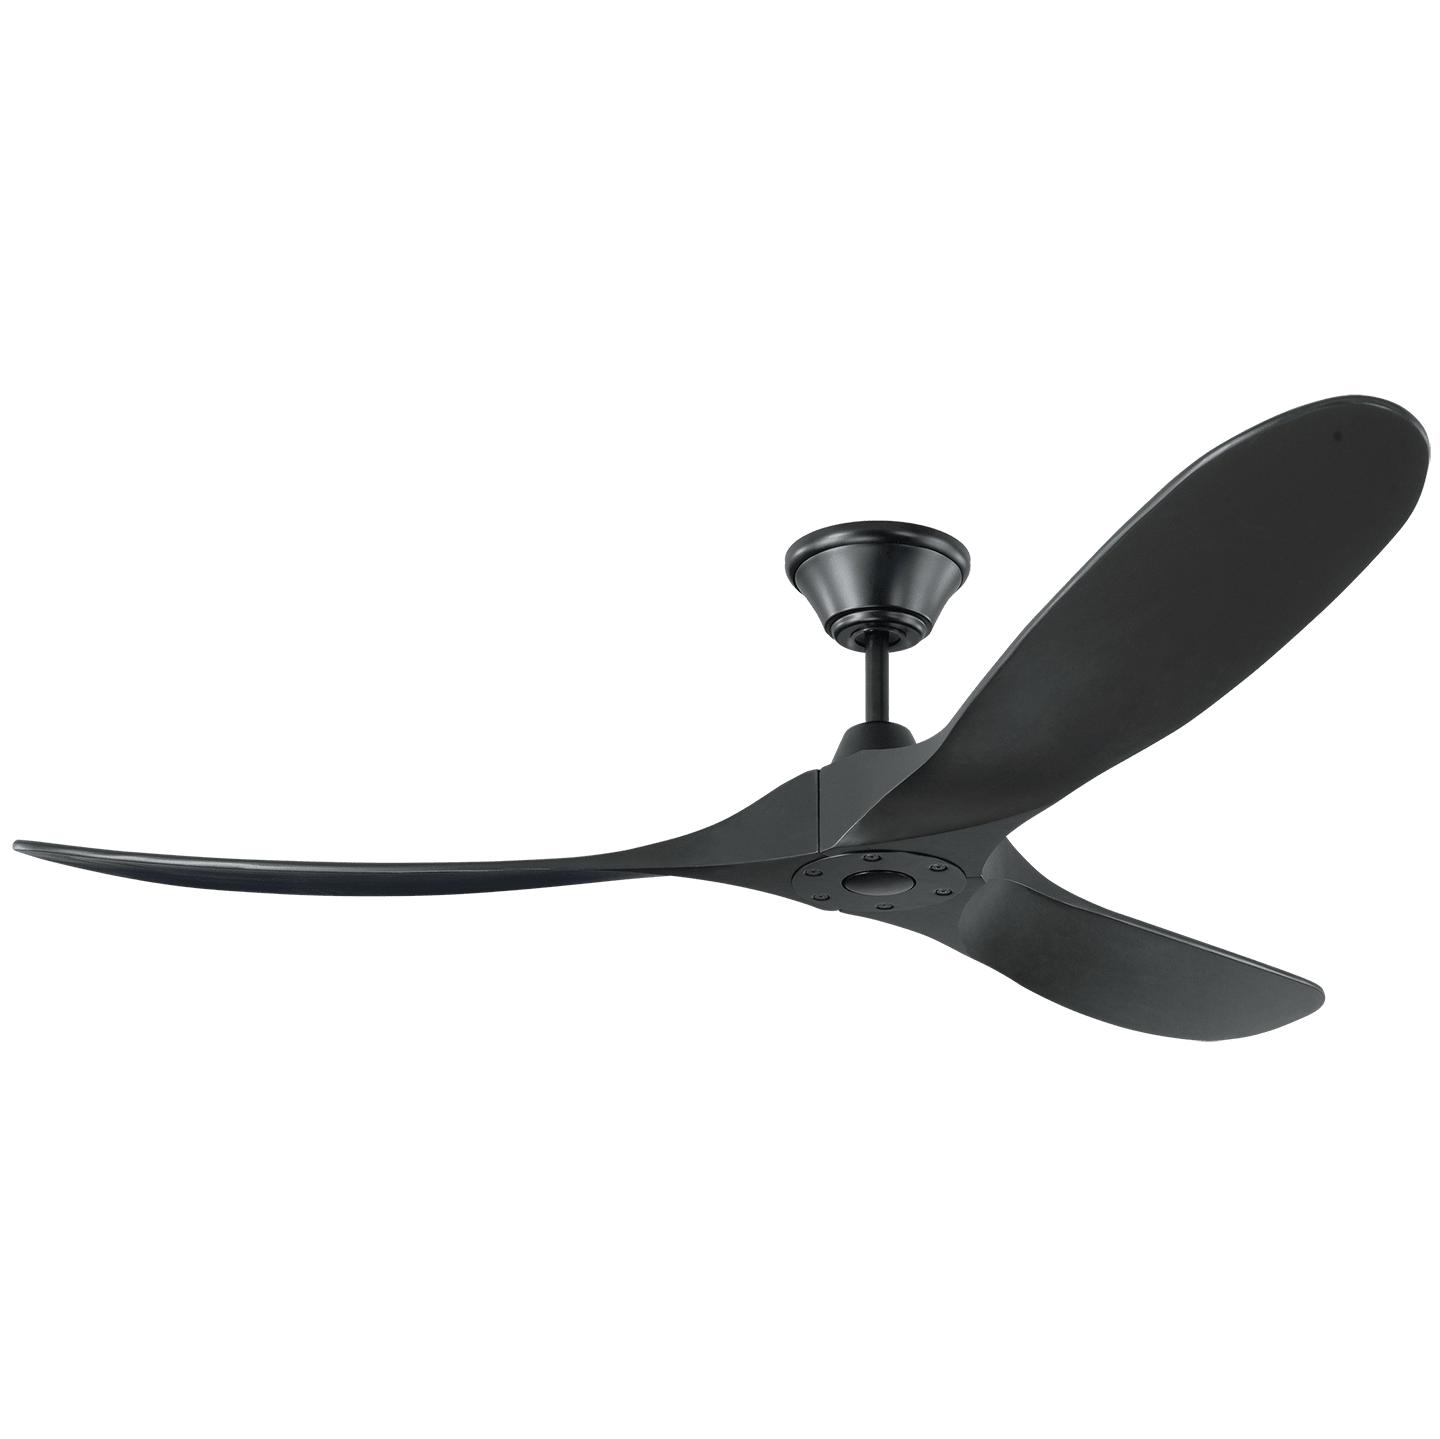 Купить Потолочный вентилятор Maverick 60" Ceiling Fan в интернет-магазине roooms.ru